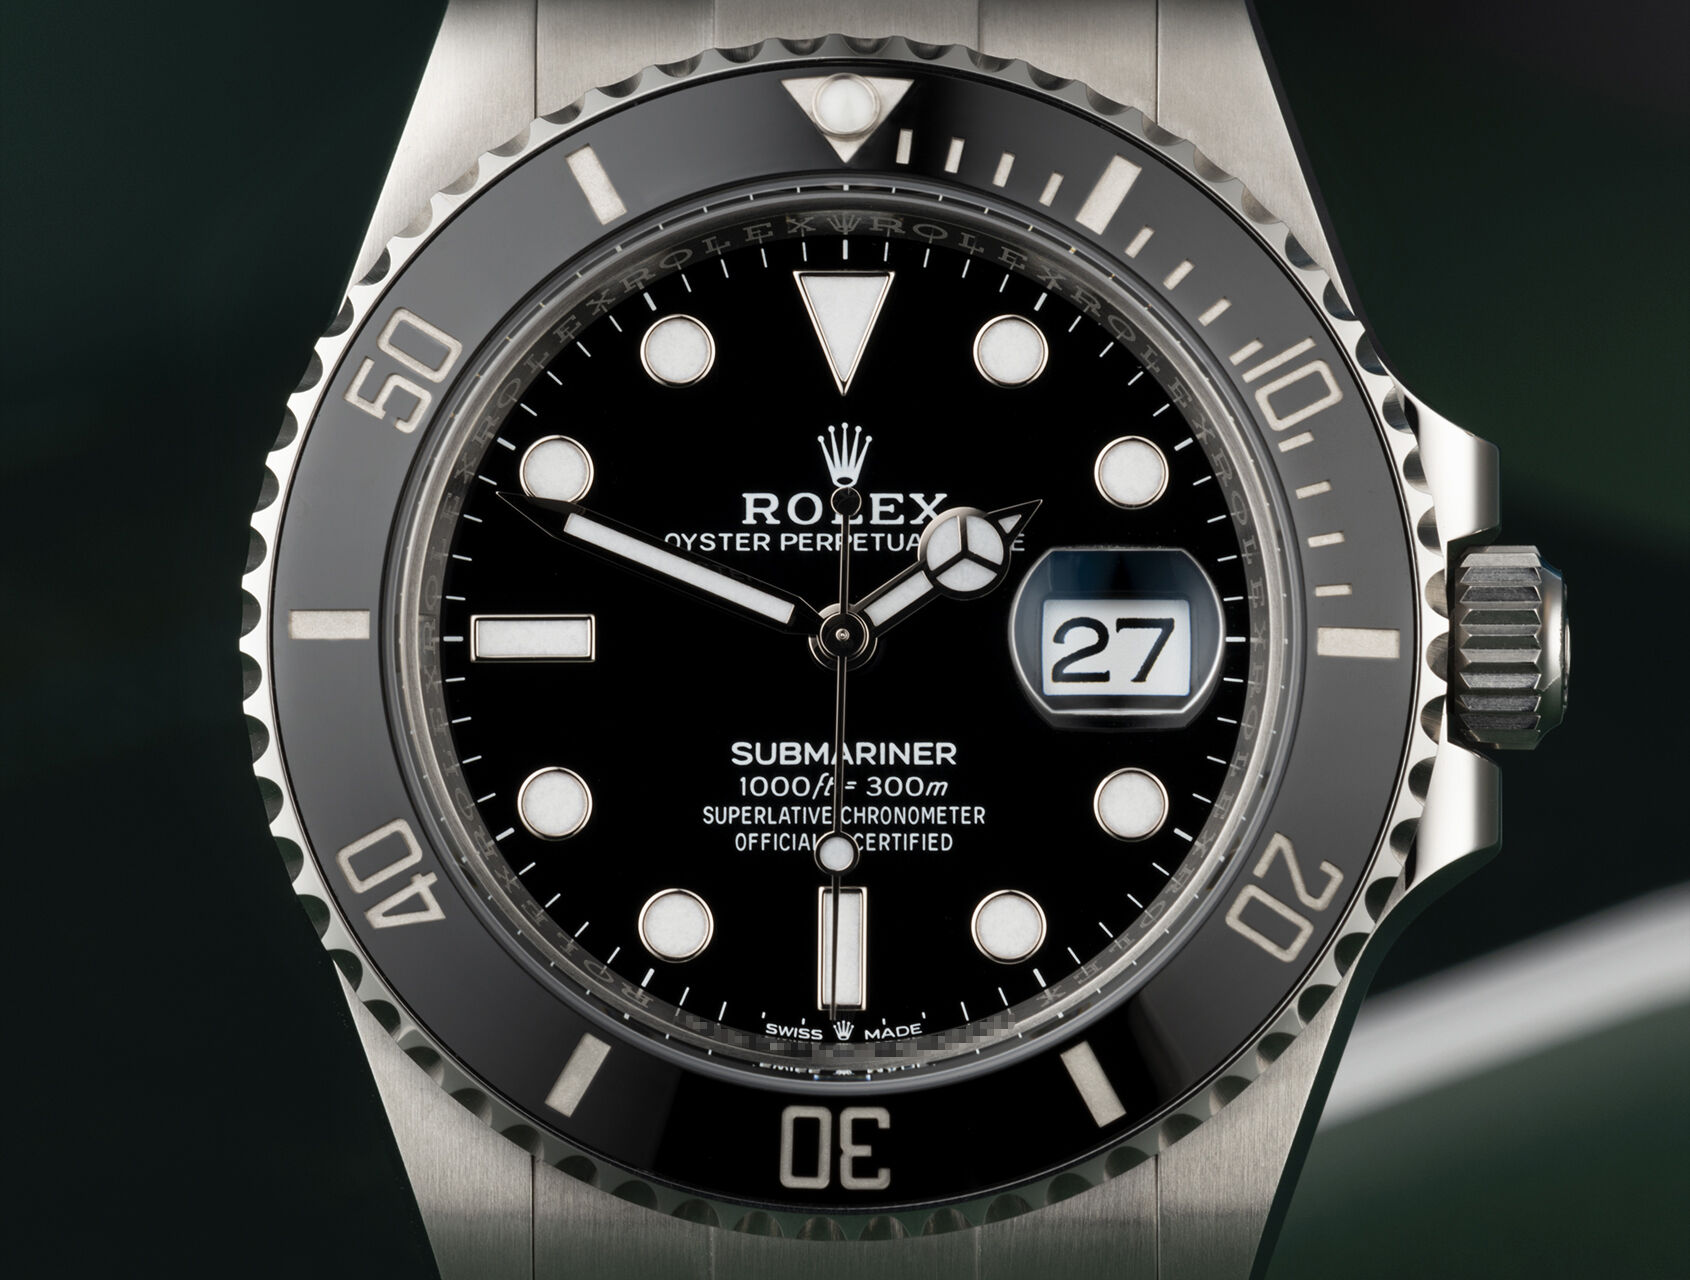 ref 126610LN | 126610LN - Box & Certificate | Rolex Submariner Date